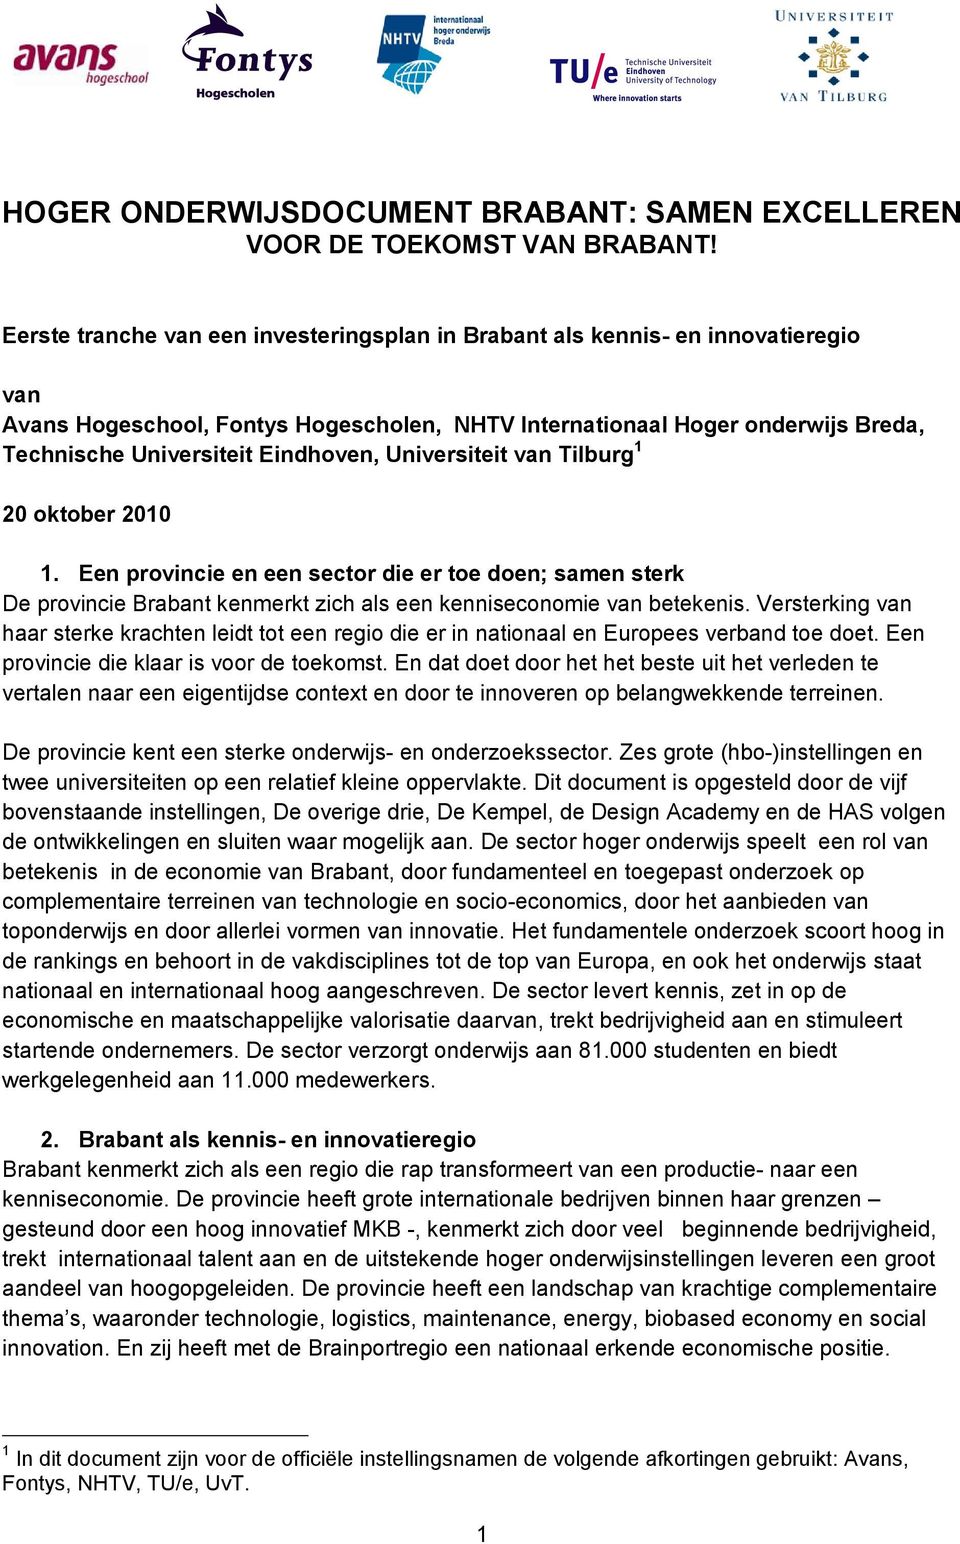 Eindhoven, Universiteit van Tilburg 1 20 oktober 2010 1. Een provincie en een sector die er toe doen; samen sterk De provincie Brabant kenmerkt zich als een kenniseconomie van betekenis.